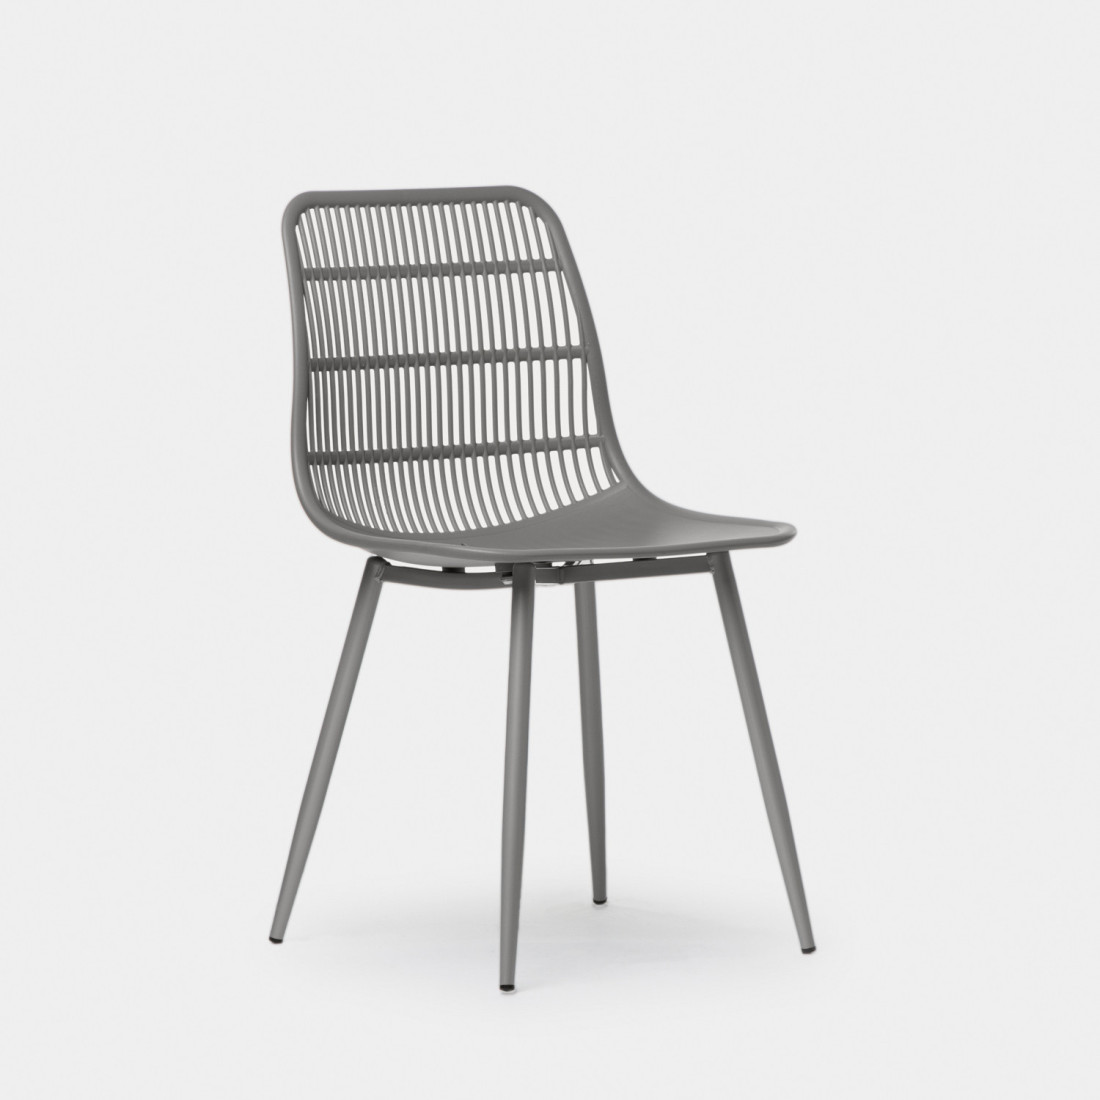 La silla de comedor Zoe es una opción perfecta para los que buscan un diseño de tendencia polivalente ideal para comedor